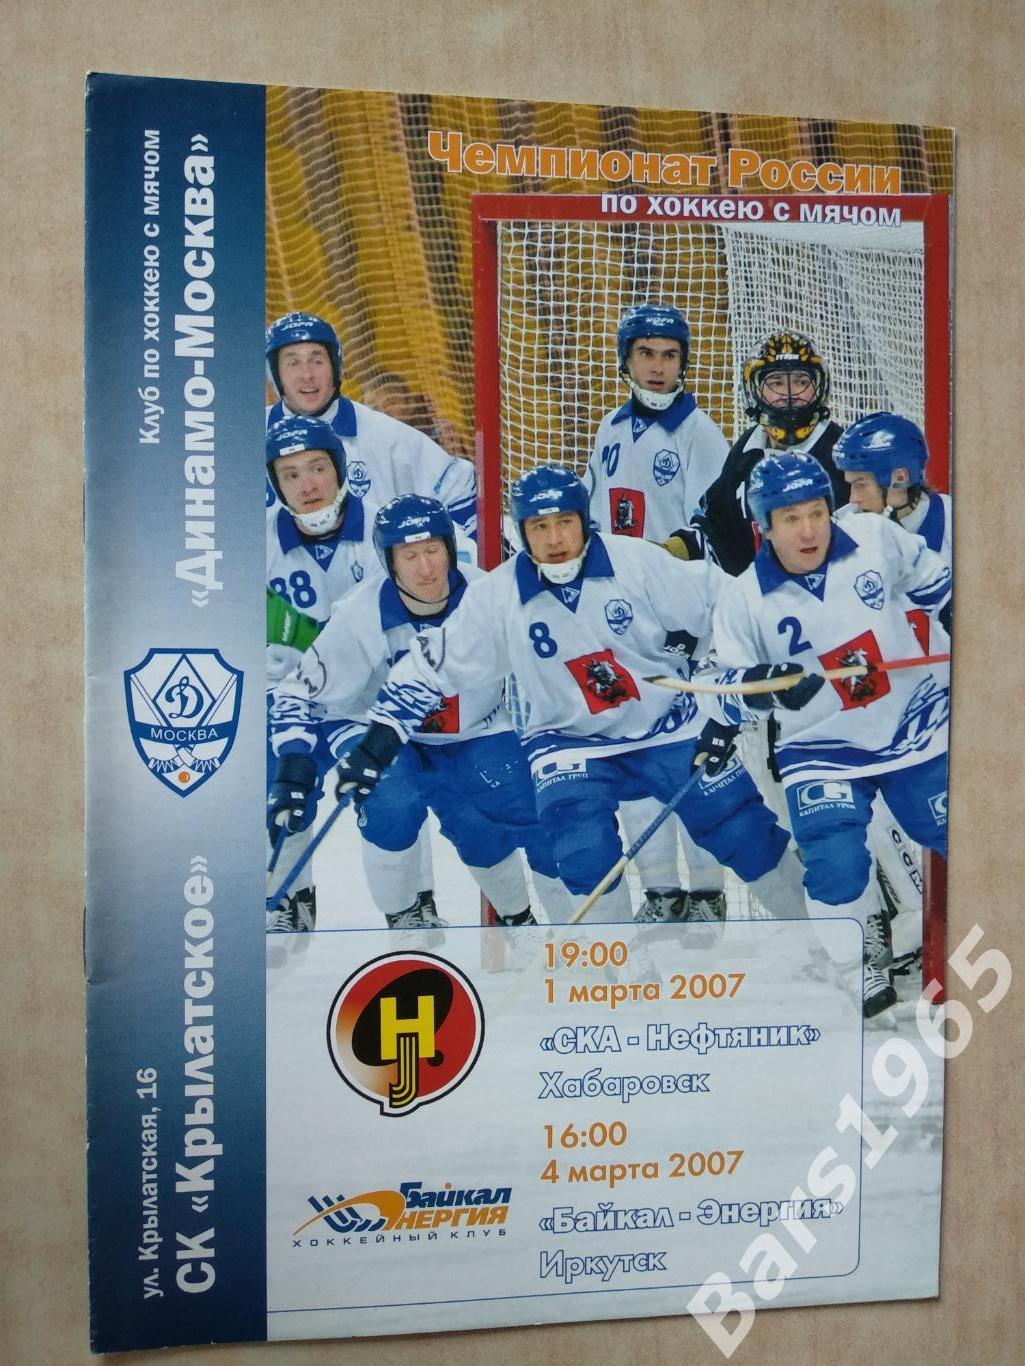 Динамо Москва - СКА-Нефтяник Хабаровск, Байкал-Энергия Иркутск 2007